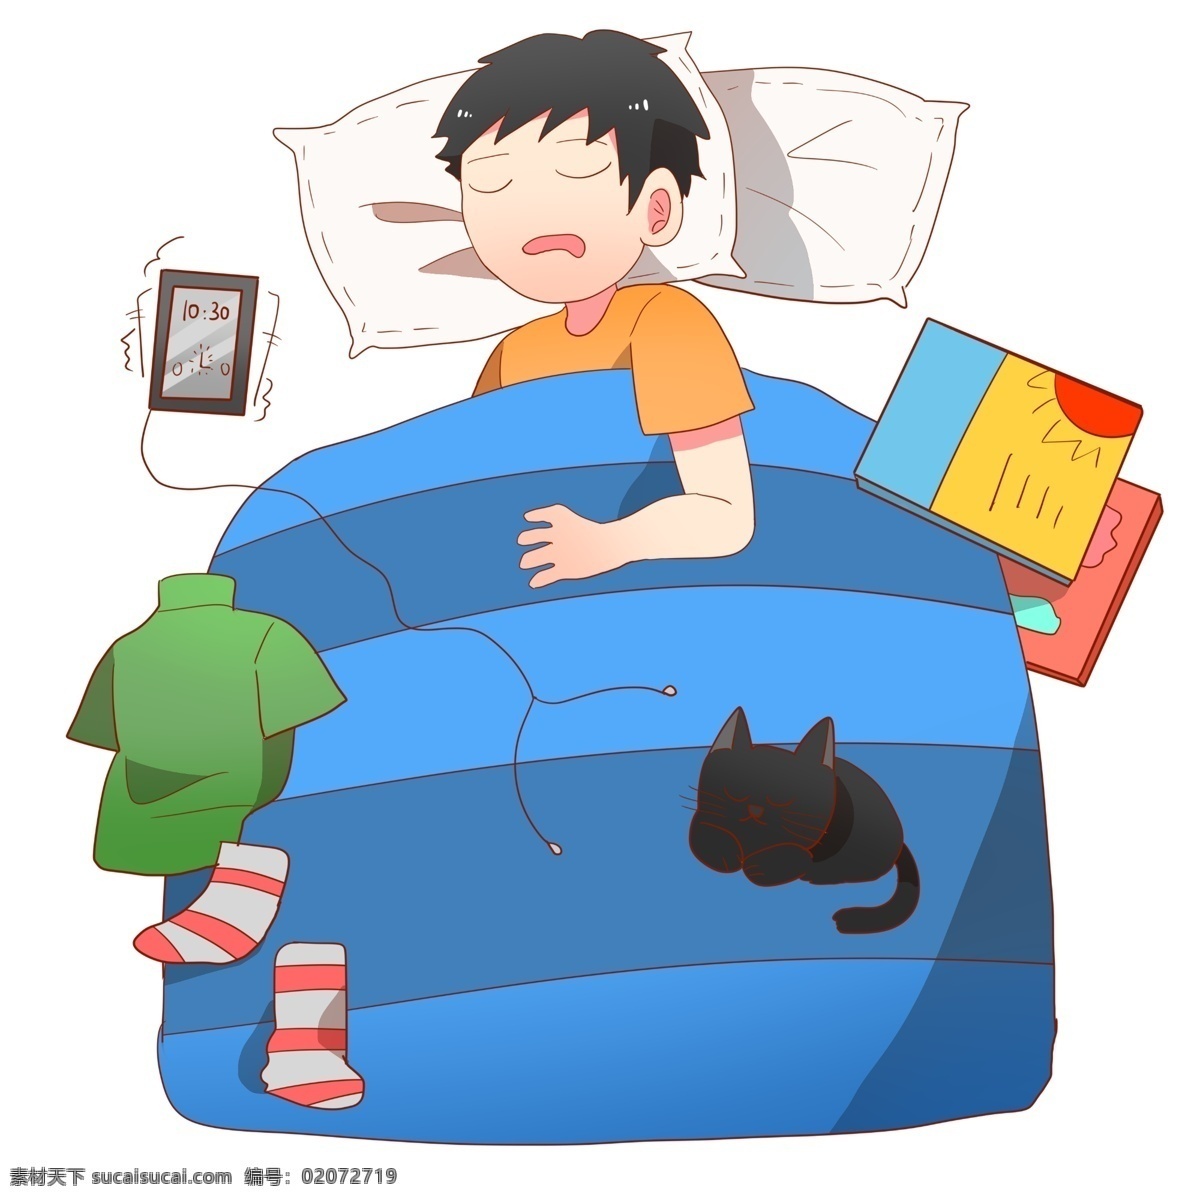 手绘 睡着 宅 男 插画 黑色的猫咪 蓝色的被子 睡觉的男孩 卡通插画 手绘宅男插画 宅在家的男孩